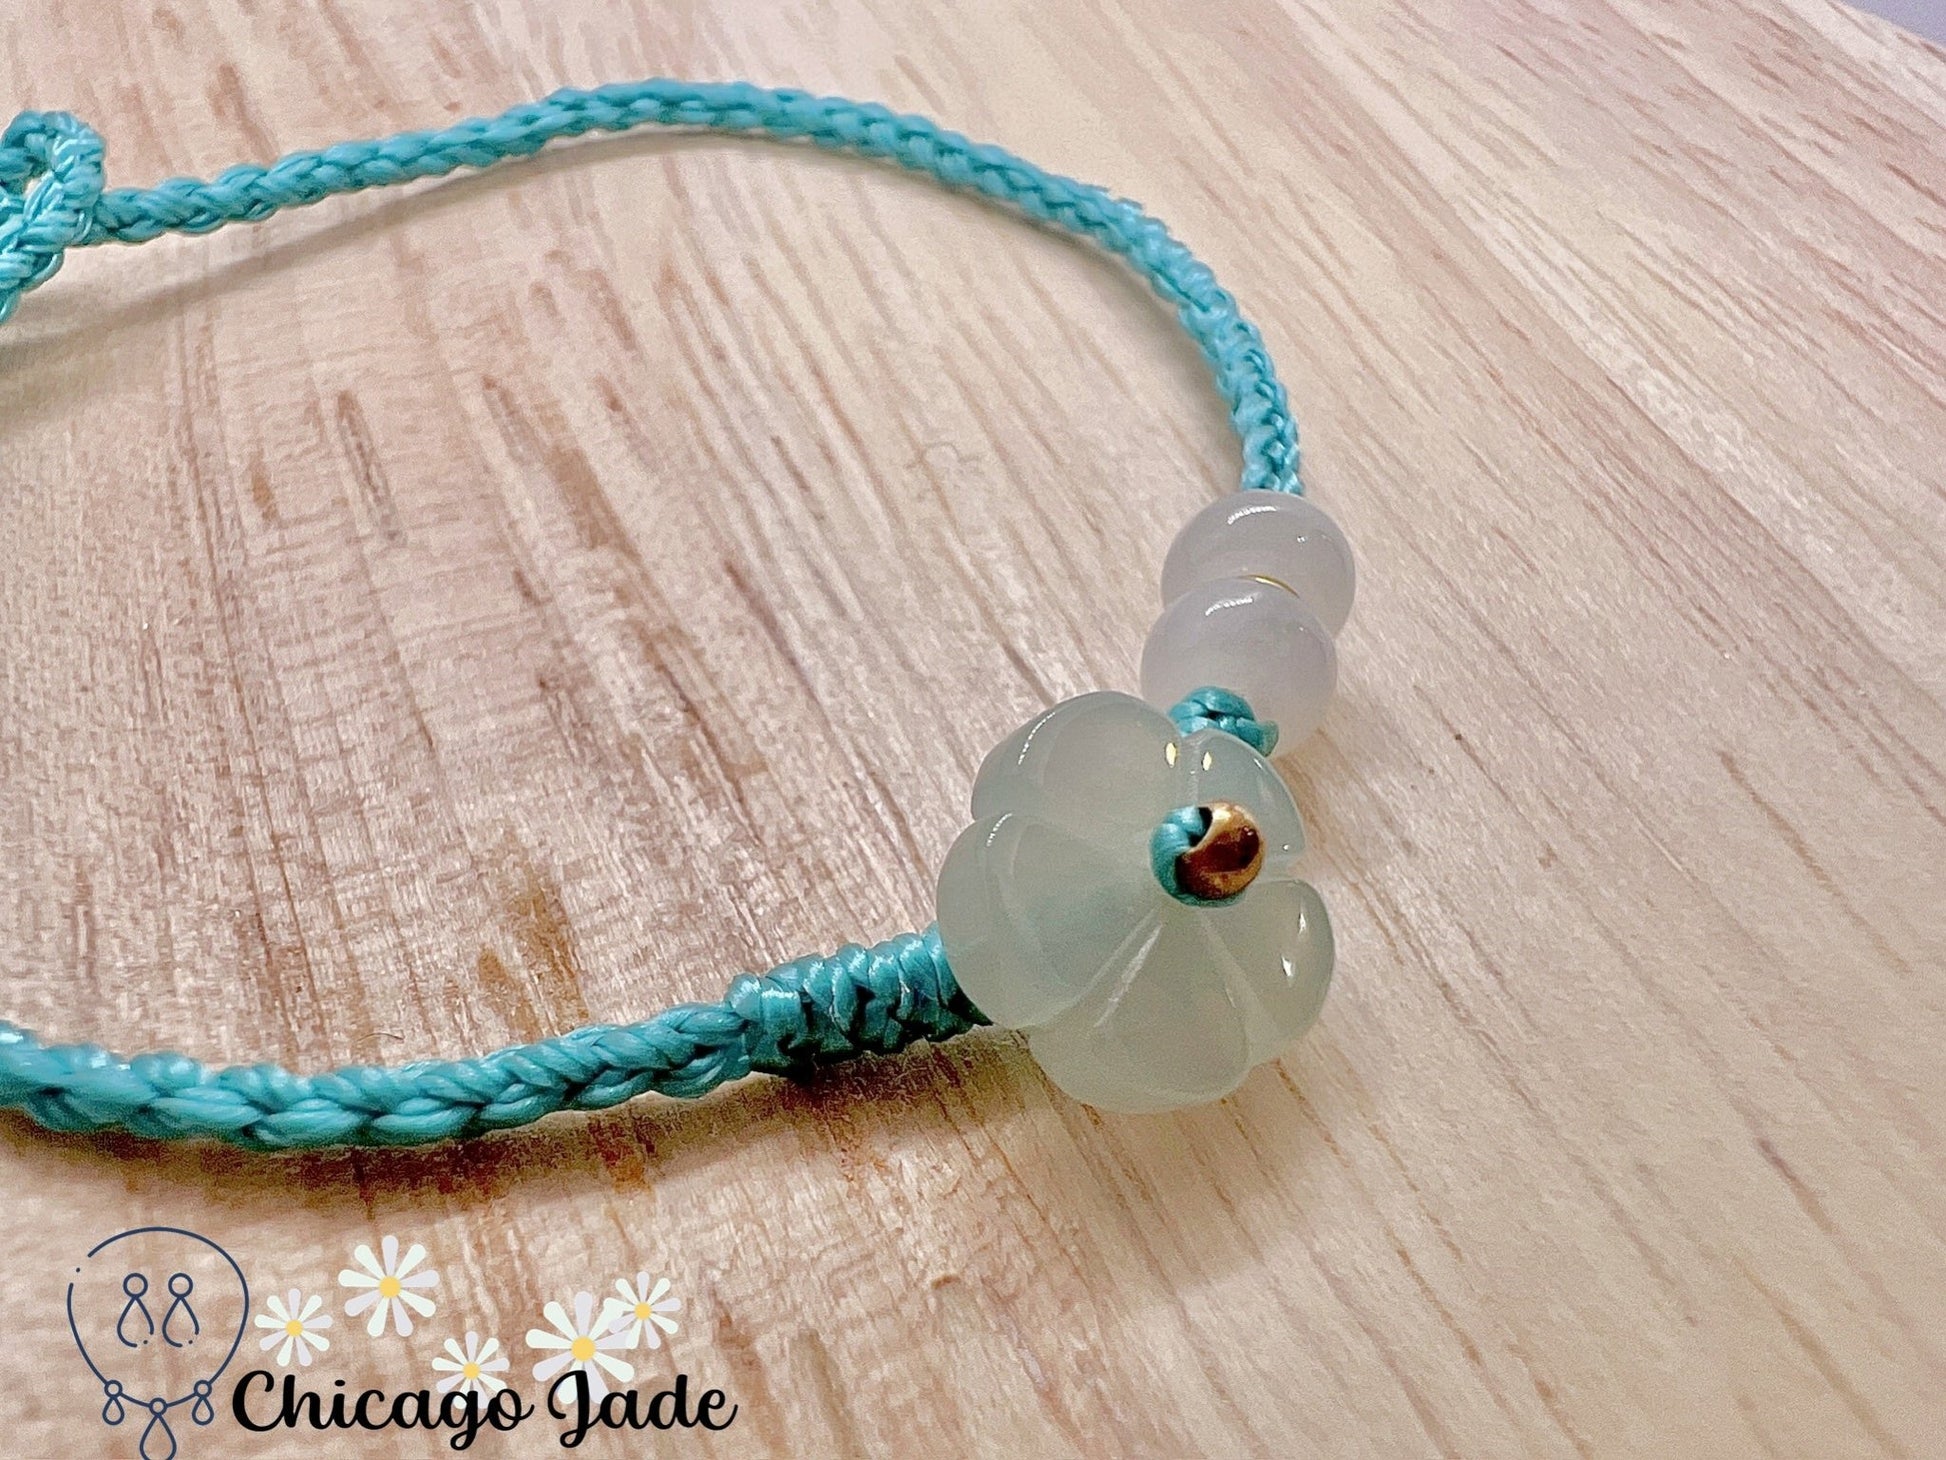 FB0014 Jadeite Flower on Teal Color Braided Bracelet - Chicago JadebraceletflowerropeChicago Jade